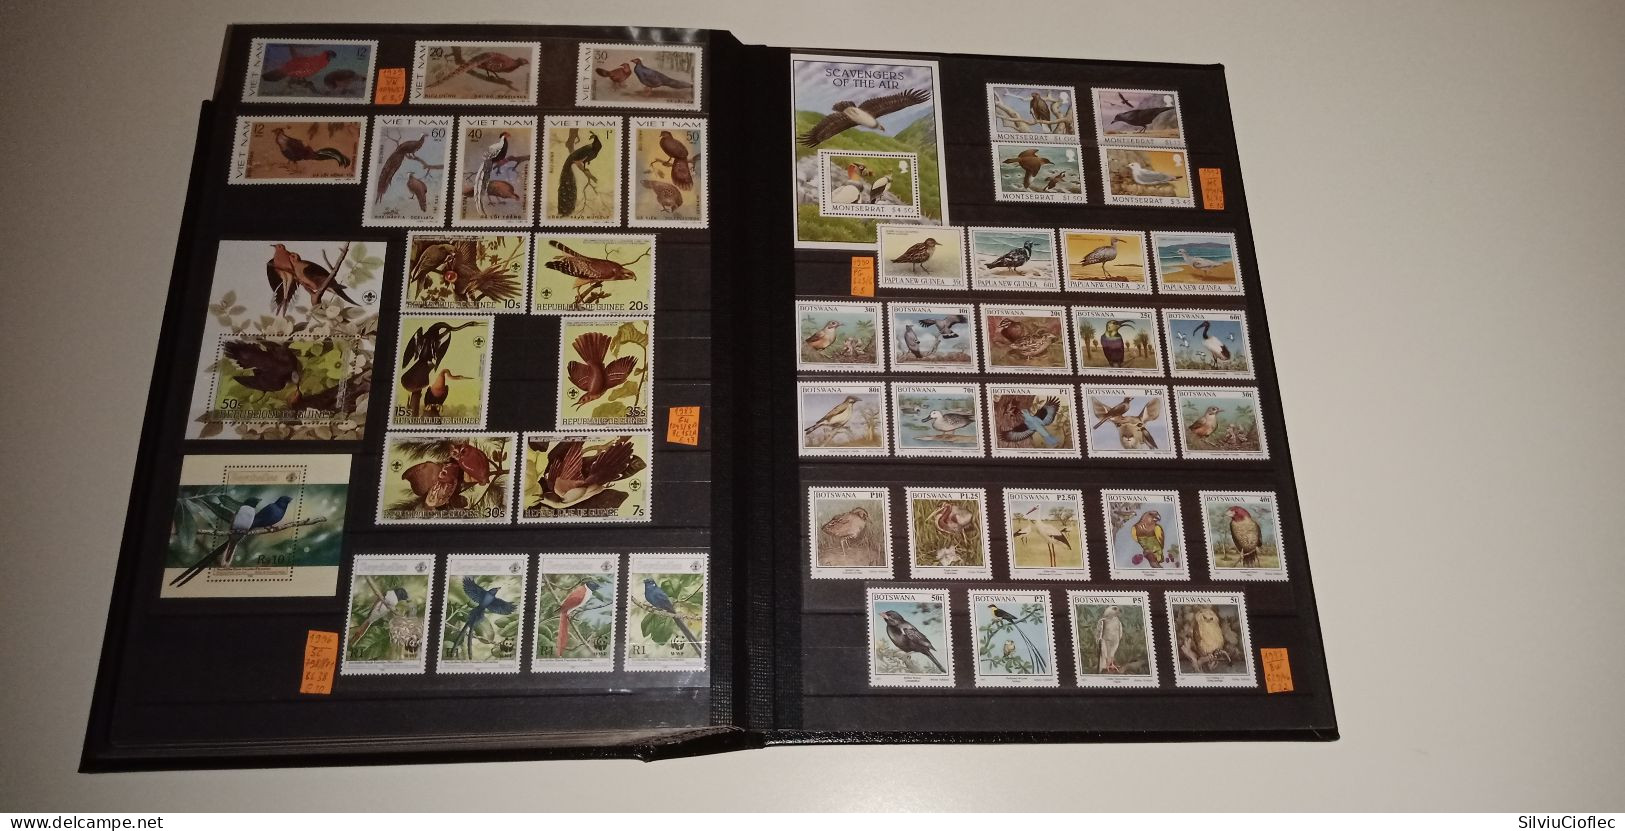 Birds Superb Stamp Collection,MNH(please read description)including 2 Leuchtturm PREMIUM album with slipcase A4 64 pages